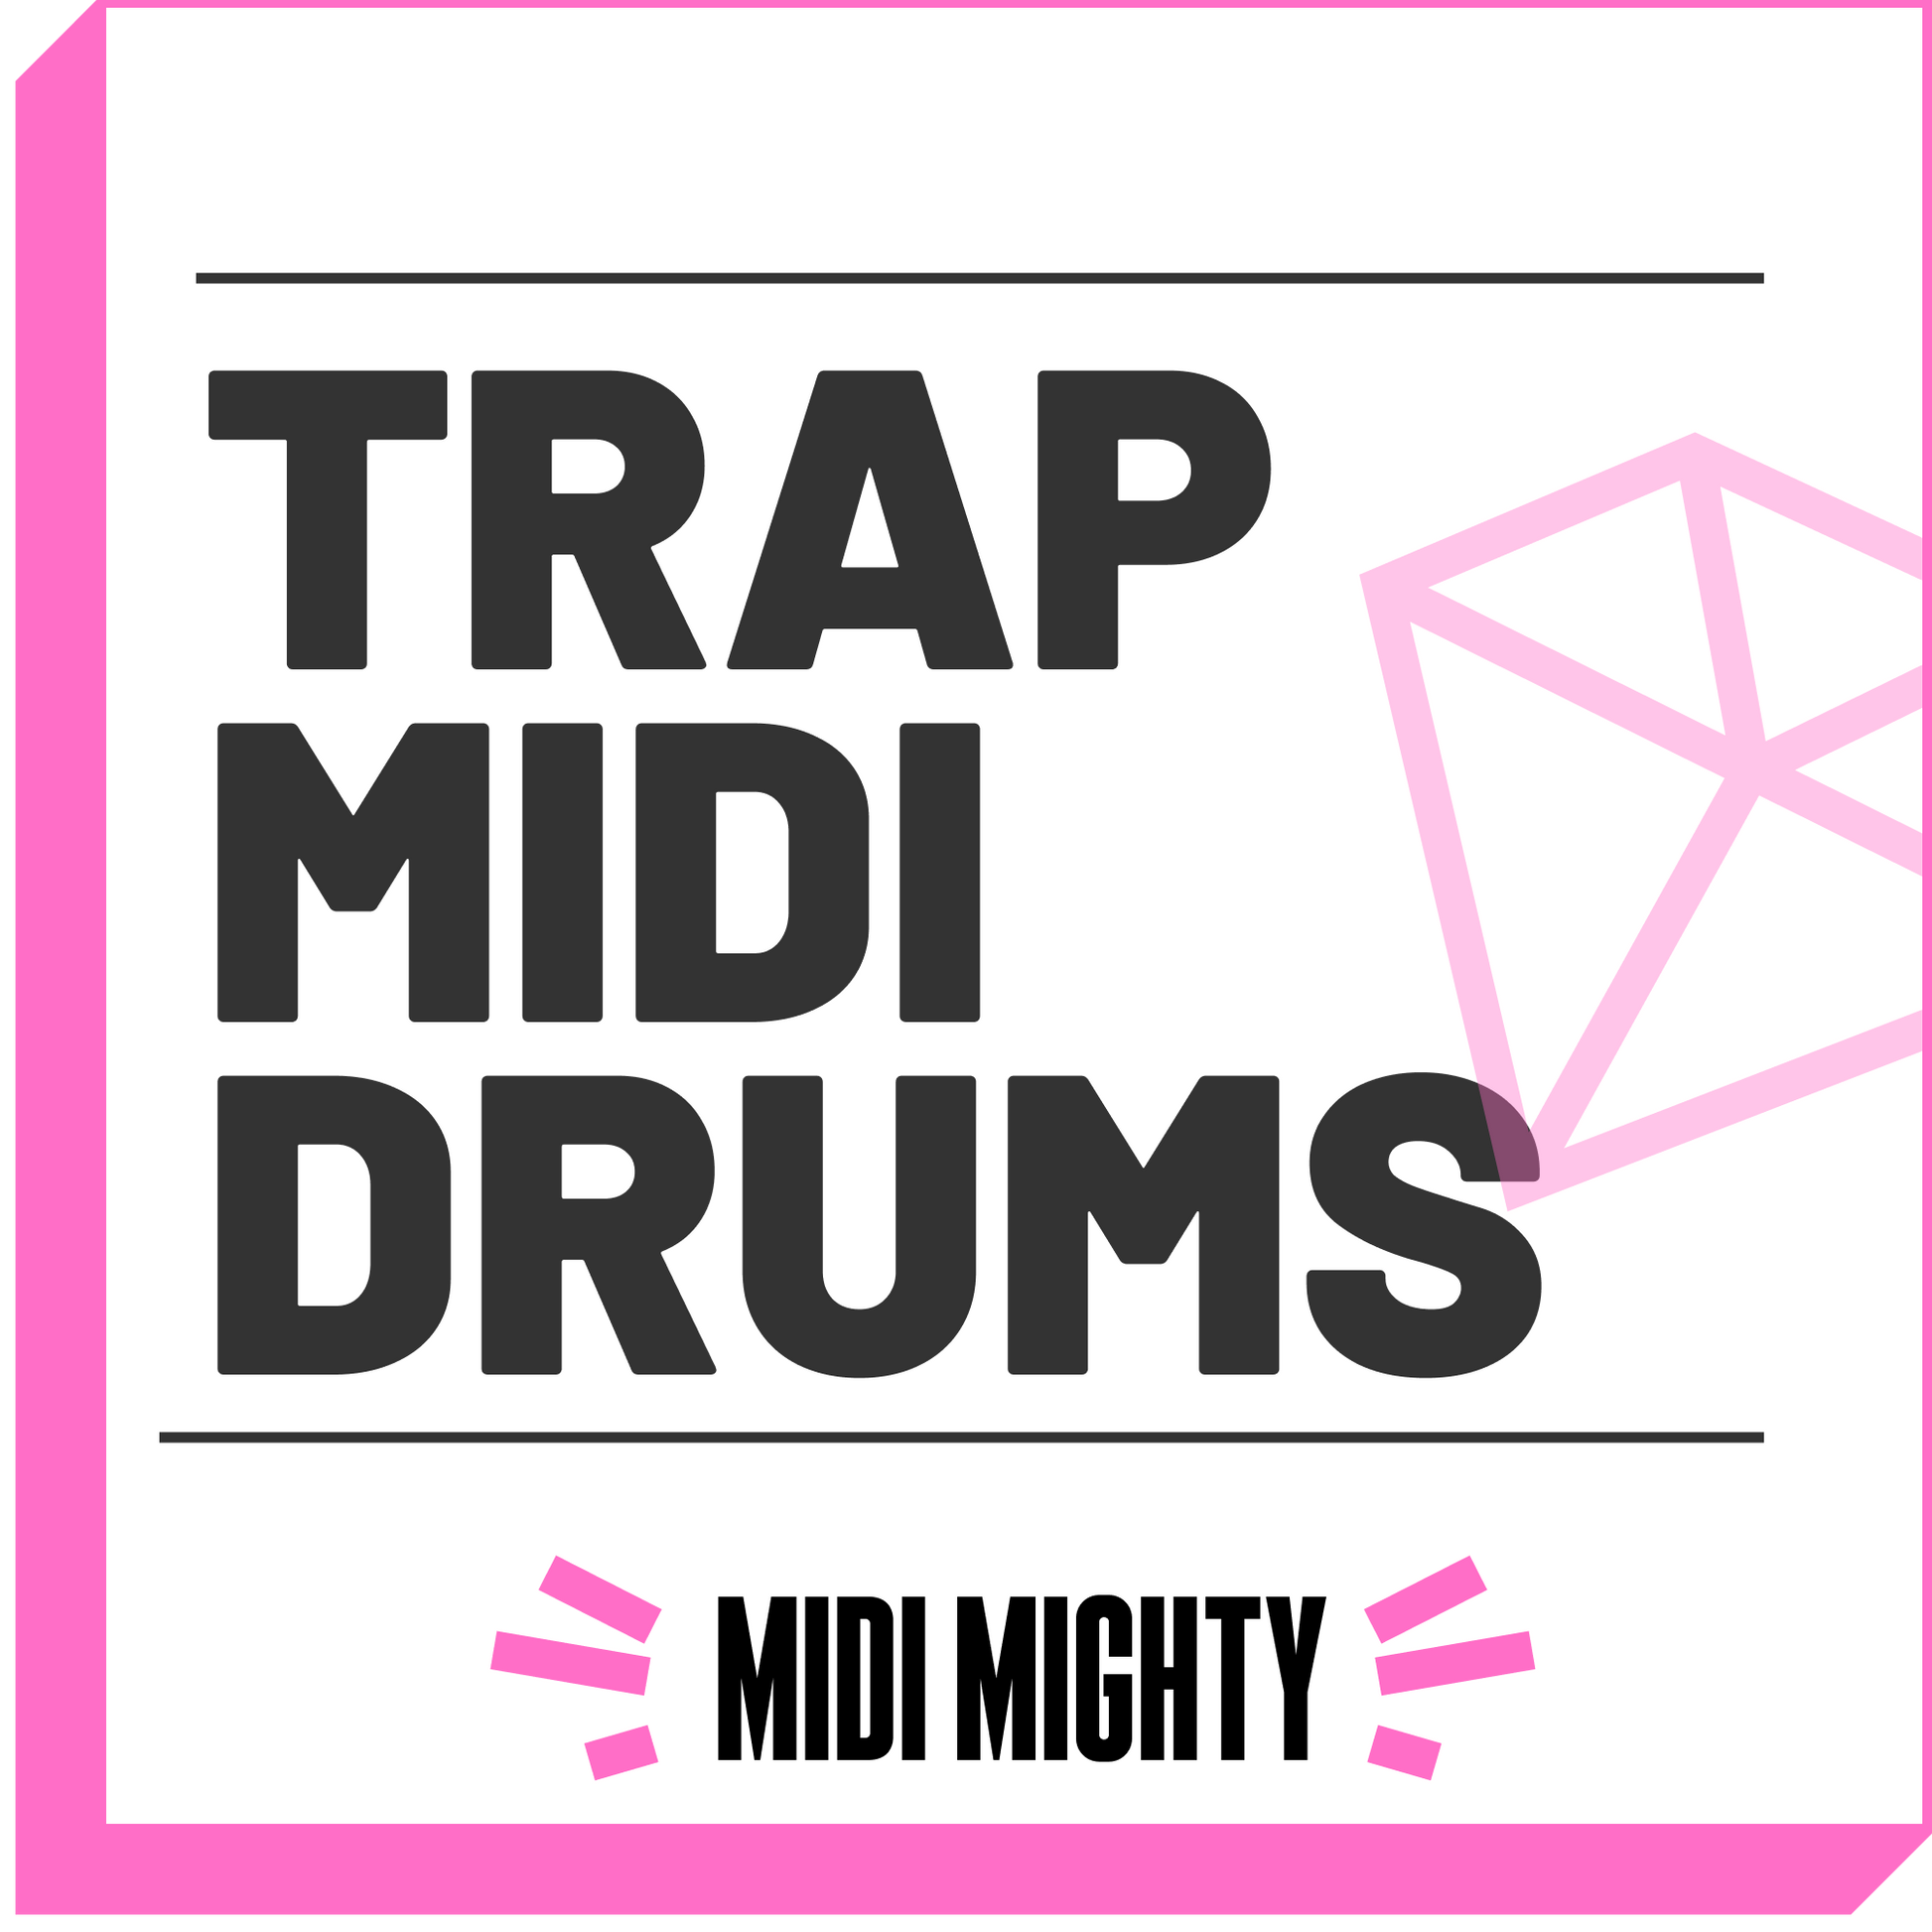 Trap Drum Guide - MIDI MIGHTY